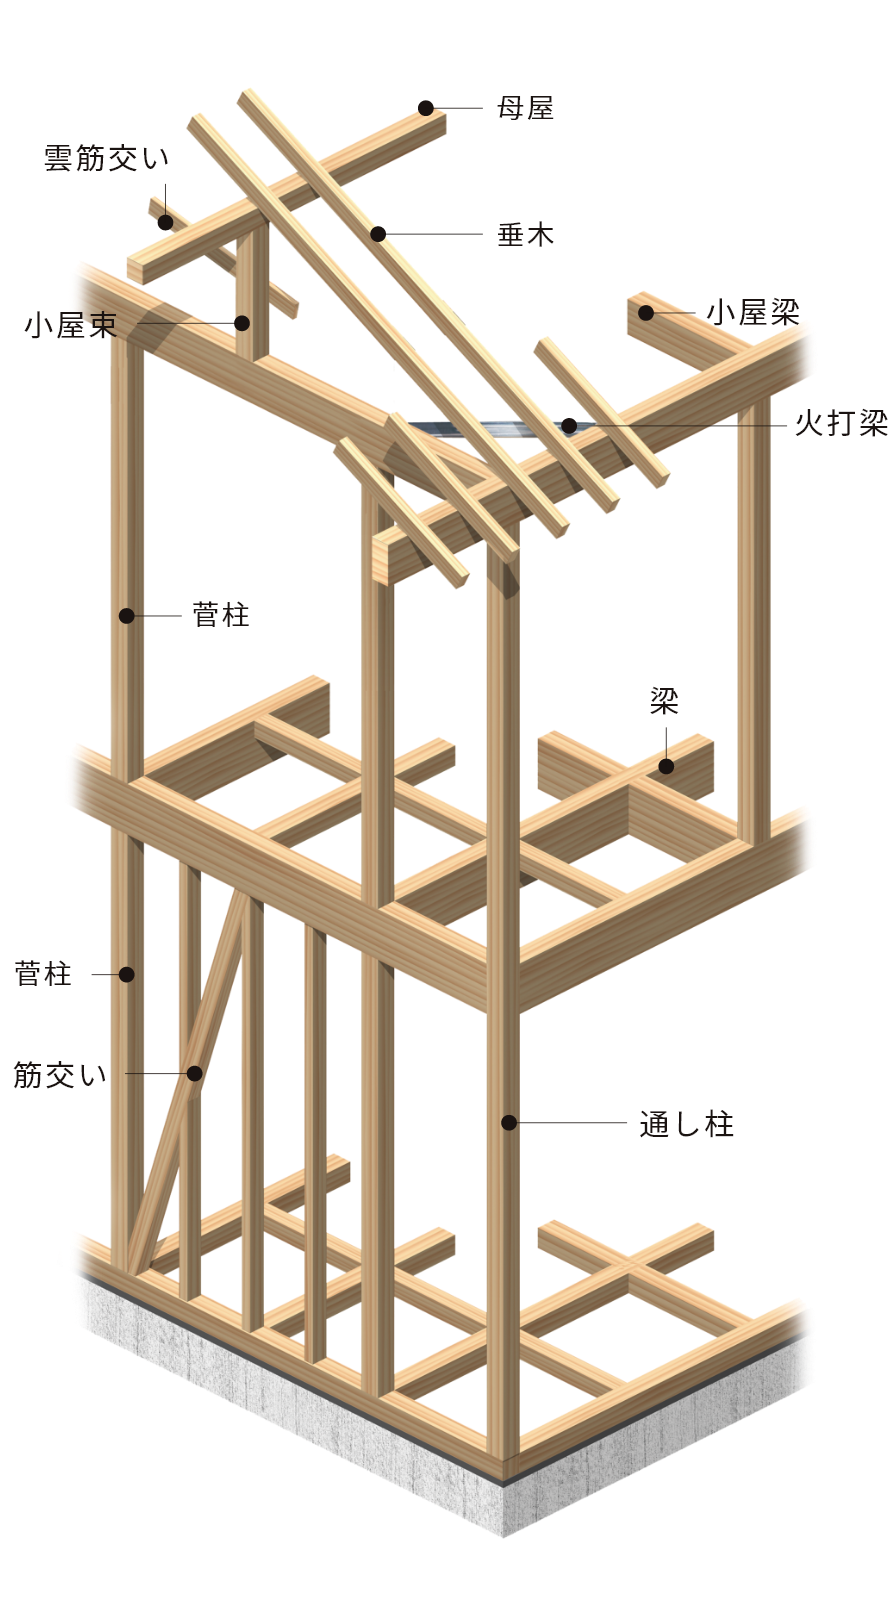 【木造軸組工法の構造】